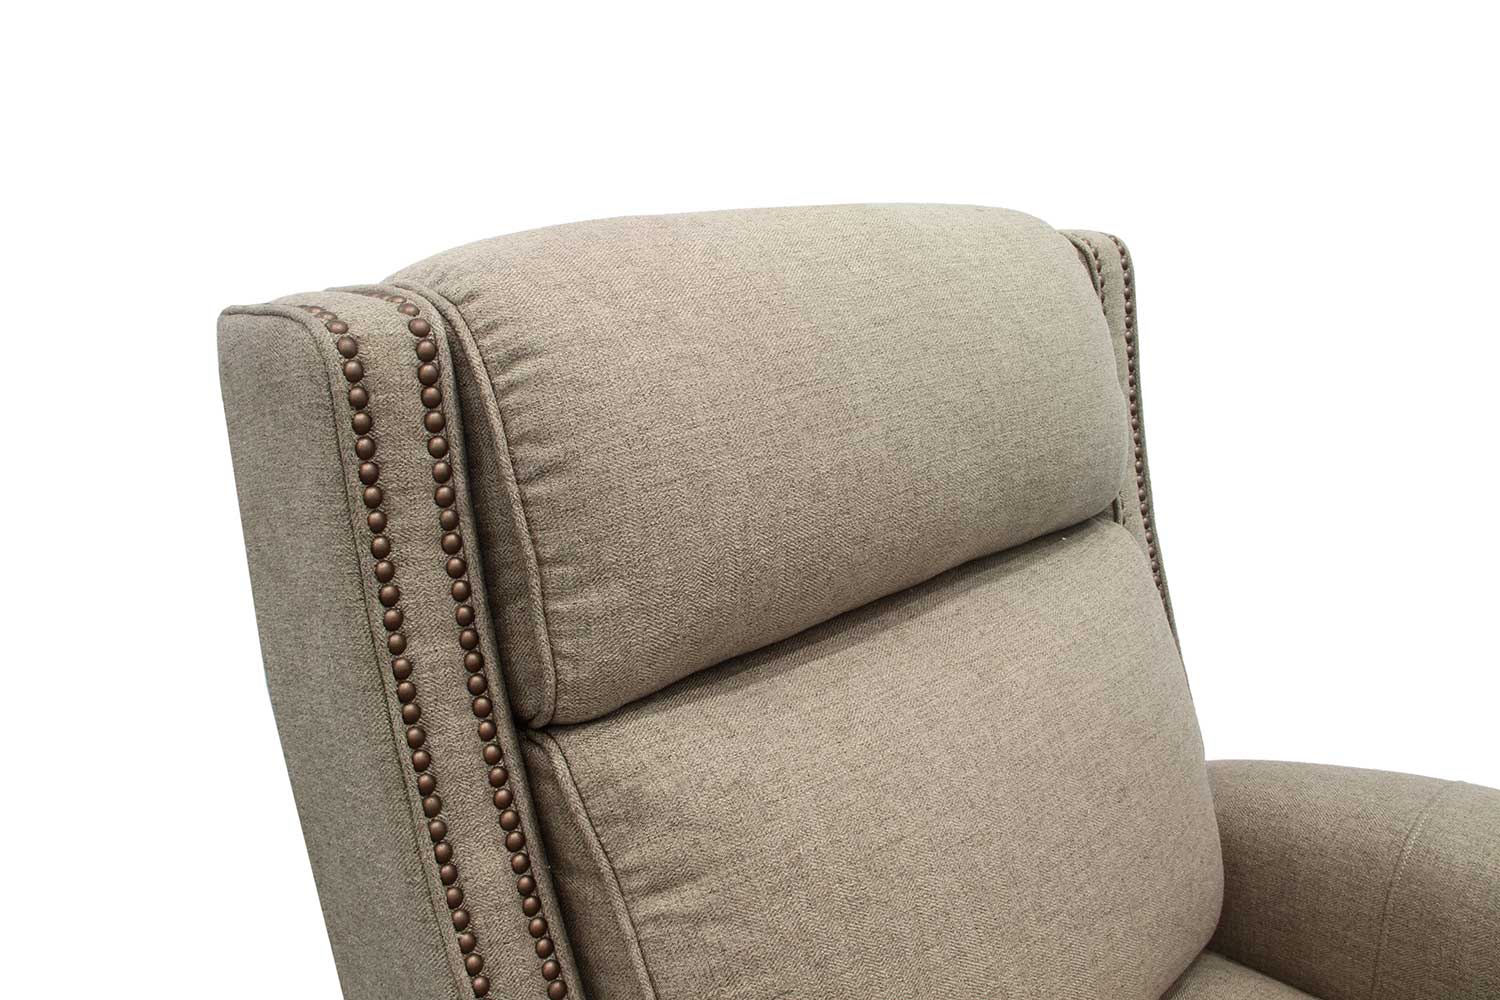 Barcalounger Barrett Power Recliner Chair with Power Headrest - Sisal/fabric